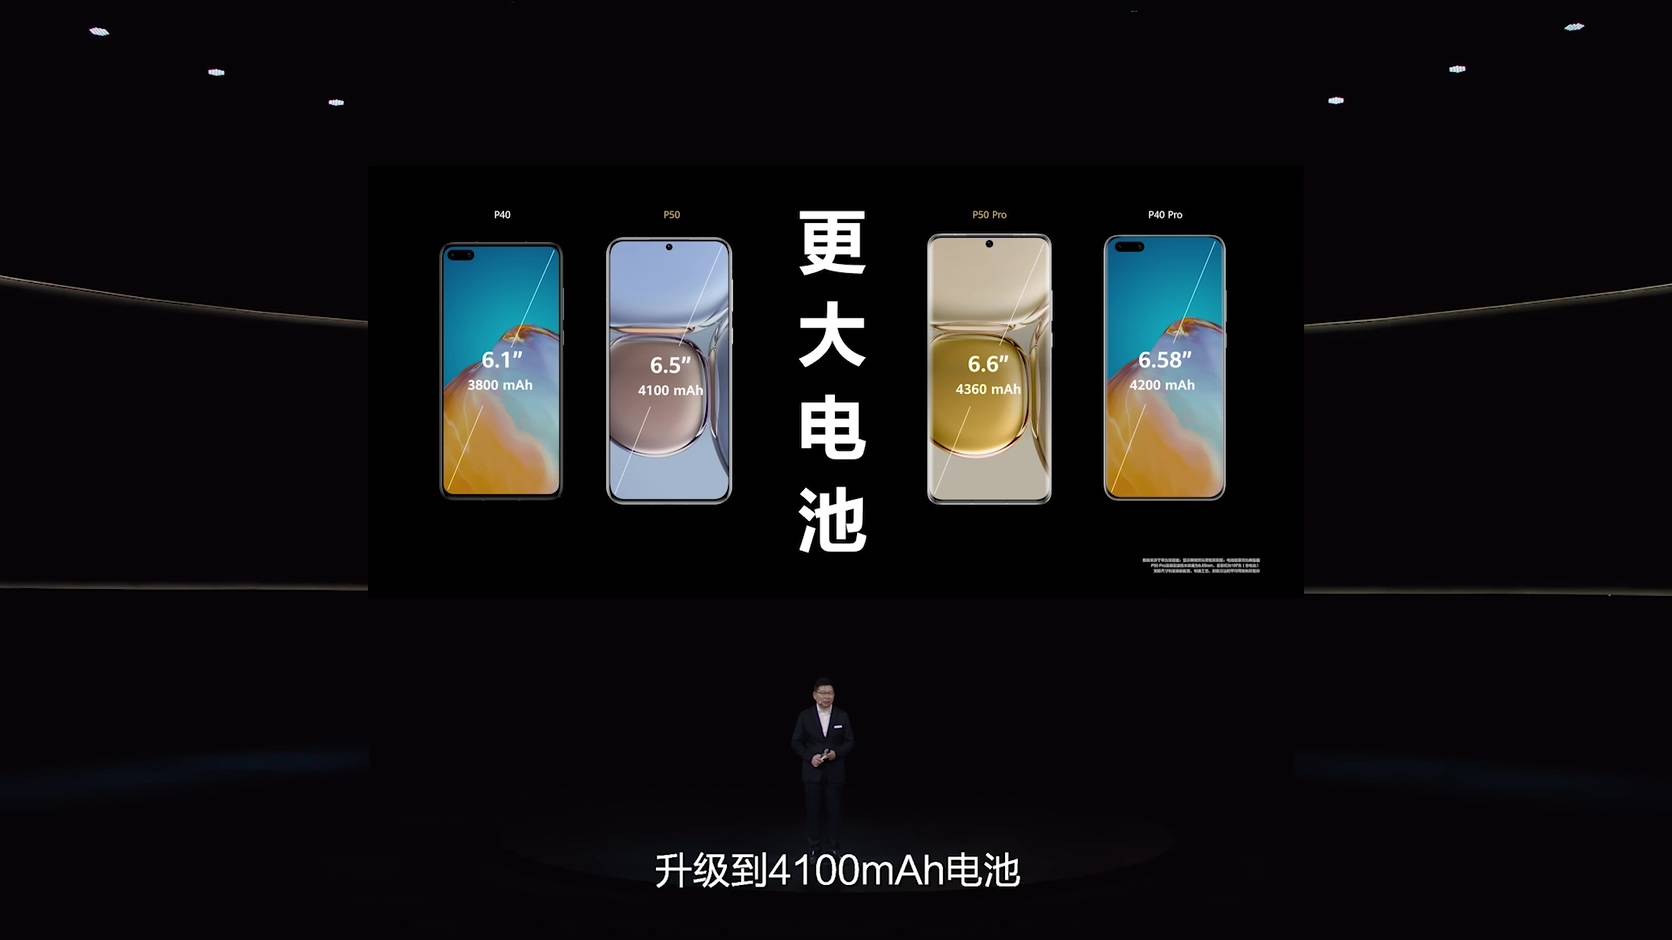 live 480836706 78290975.flv 20210729 193633.004 - Sintesi della conferenza Huawei P50: a partire da 4488 yuan! Chip Kirin e Snapdragon opzionali, le prestazioni dell’immagine soddisfano l’appetito